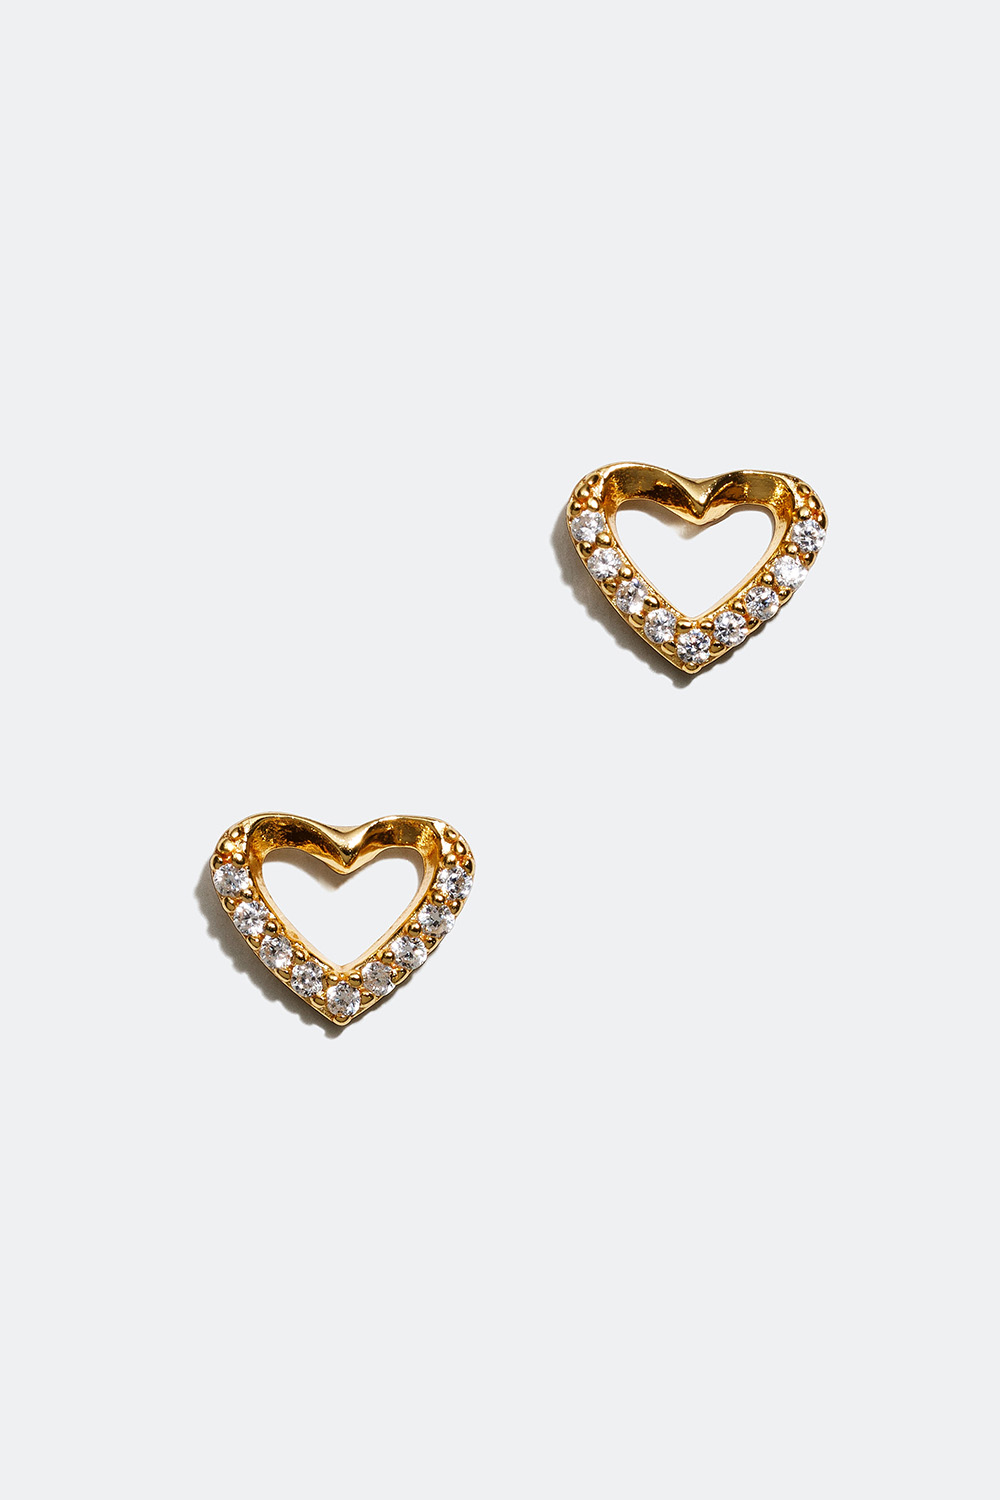 Korvakorut, joissa sydän ja tähtiä, 18 karaatin kultaus ryhmässä Korut / Korvakorut @ Glitter (553002352002)